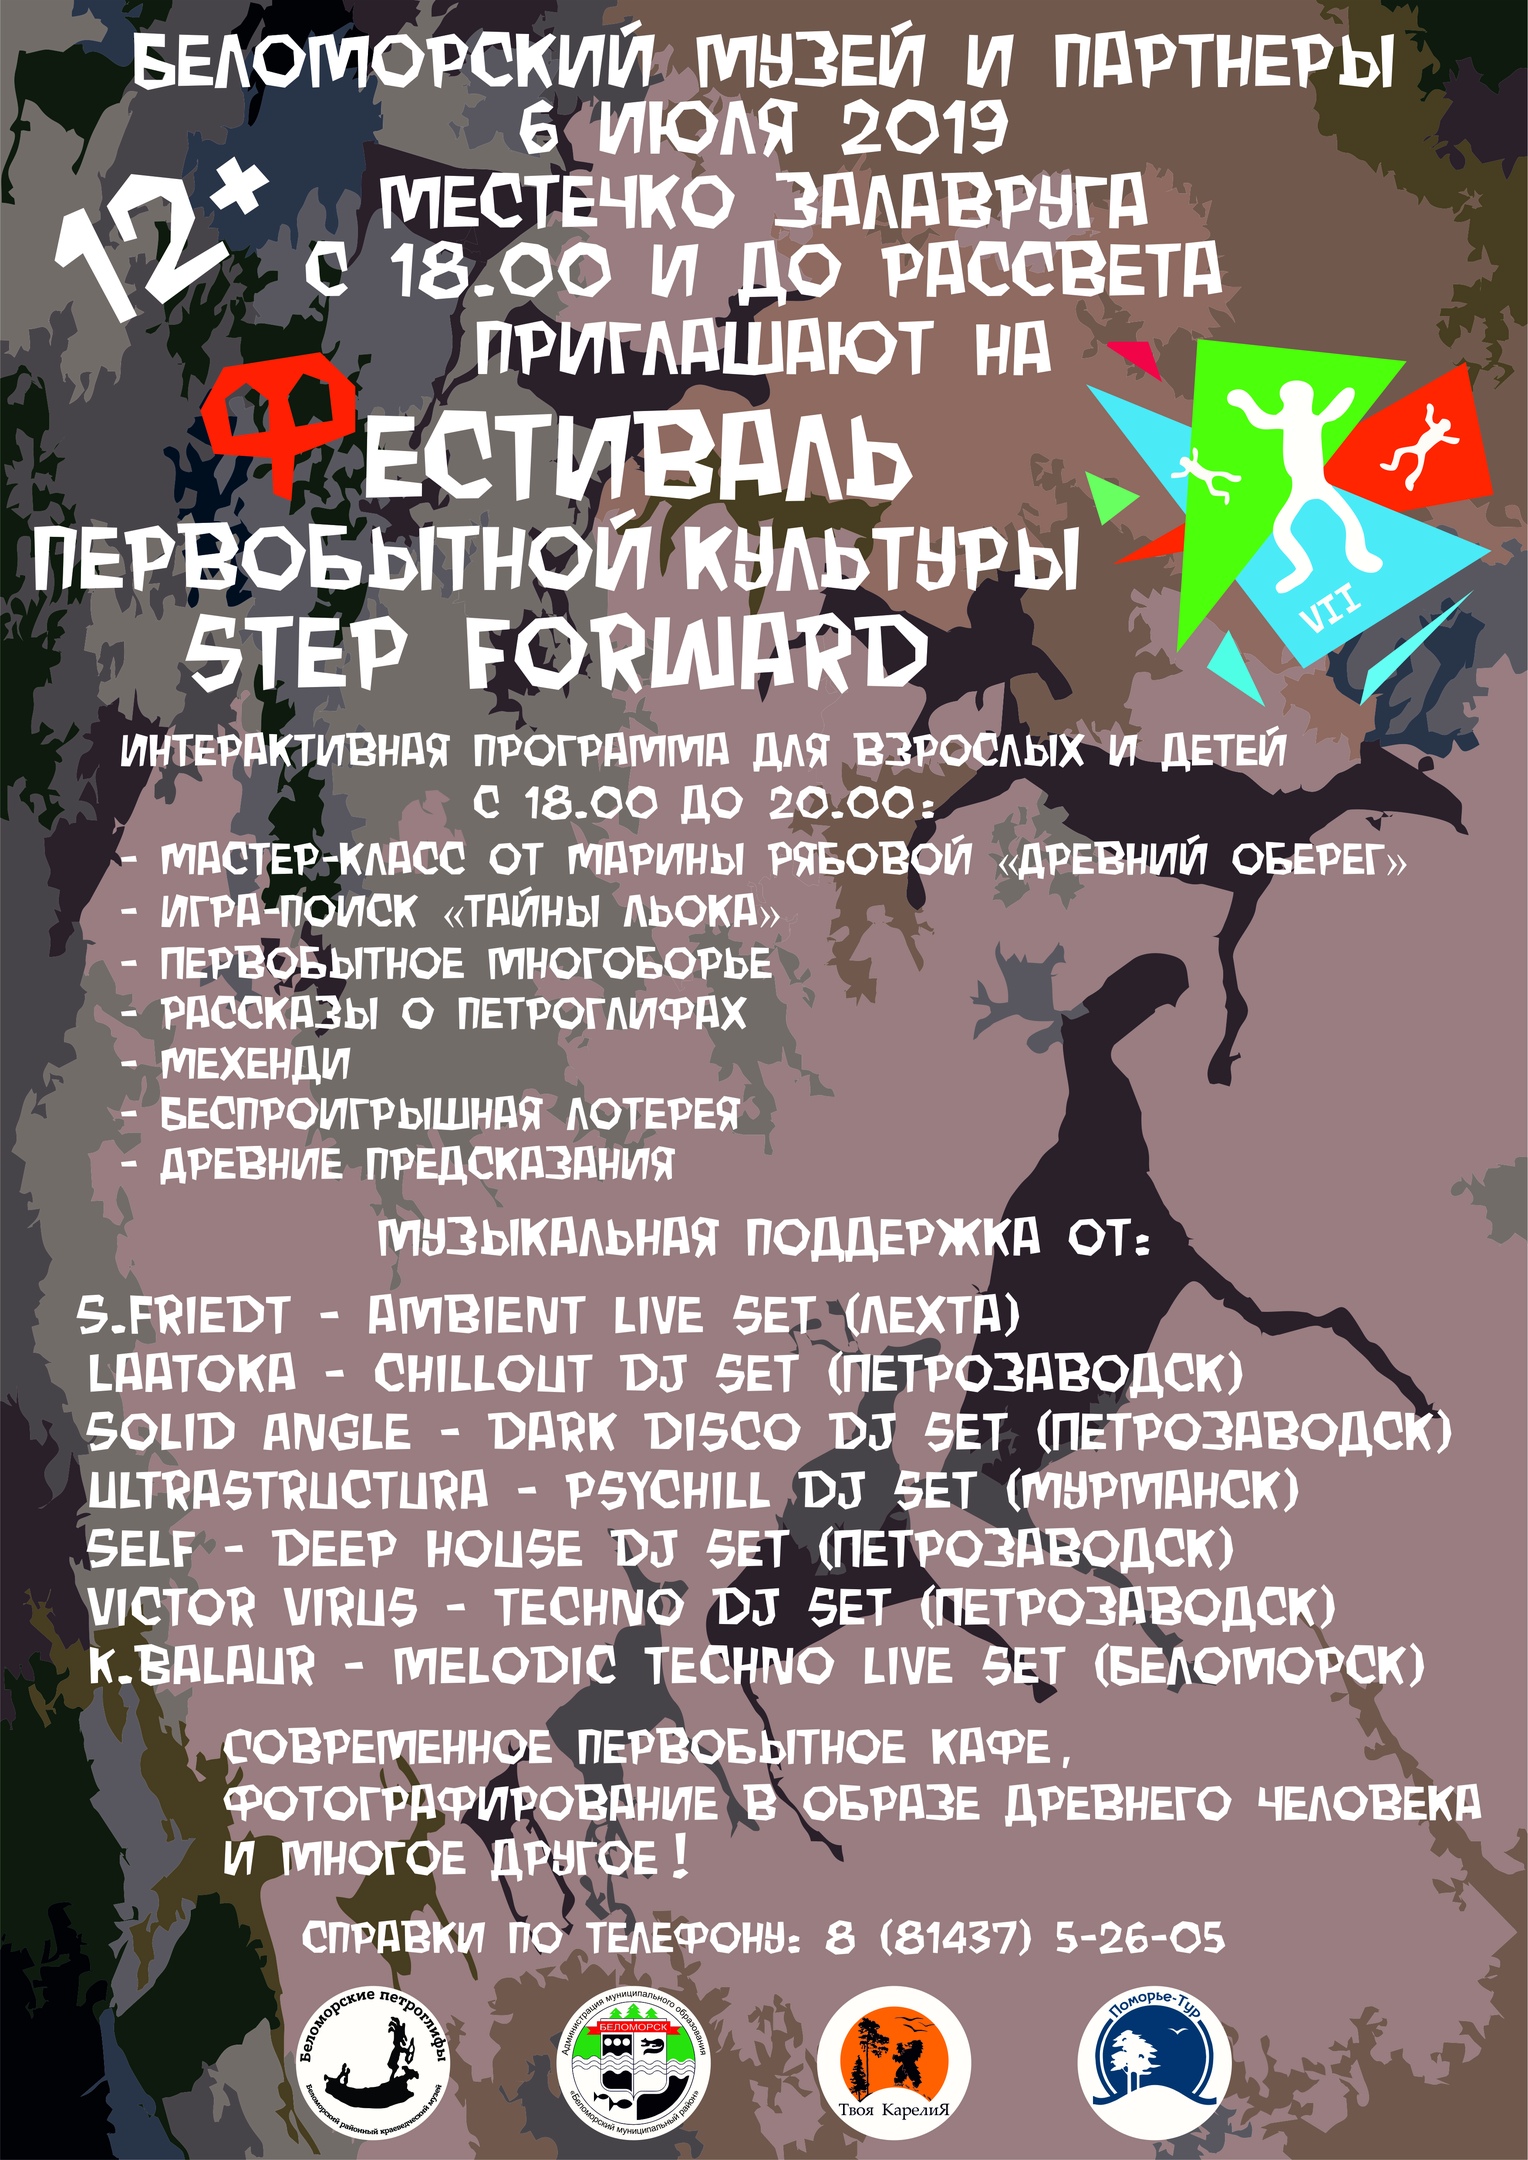  Фестиваль первобытной культуры "Step Forward"